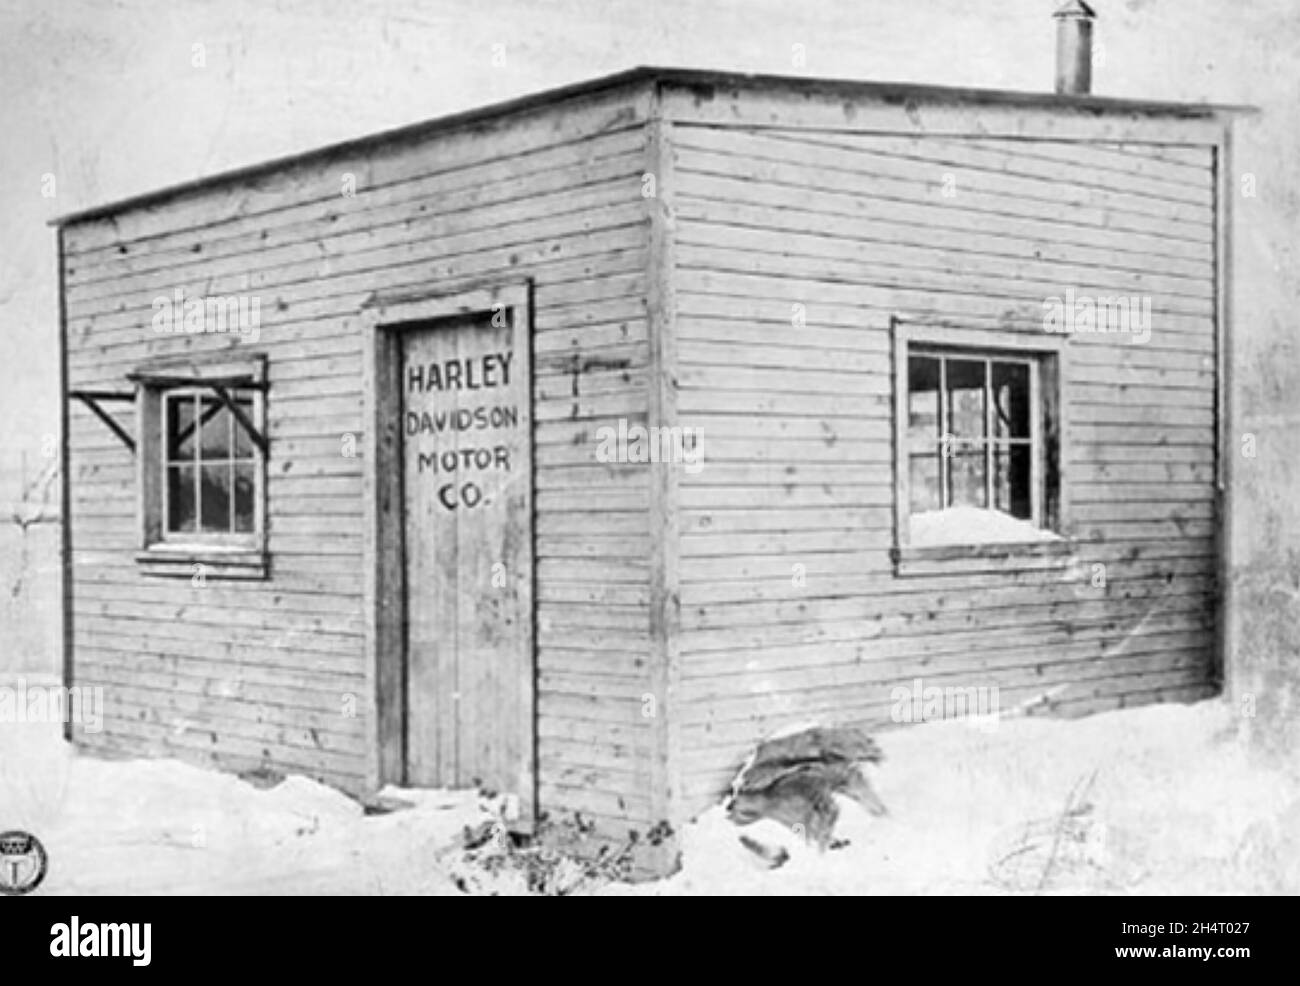 HARLEY-DAVIDSON produttore americano di motociclette. Il laboratorio originale a Milwaukee circa 1903. Foto Stock